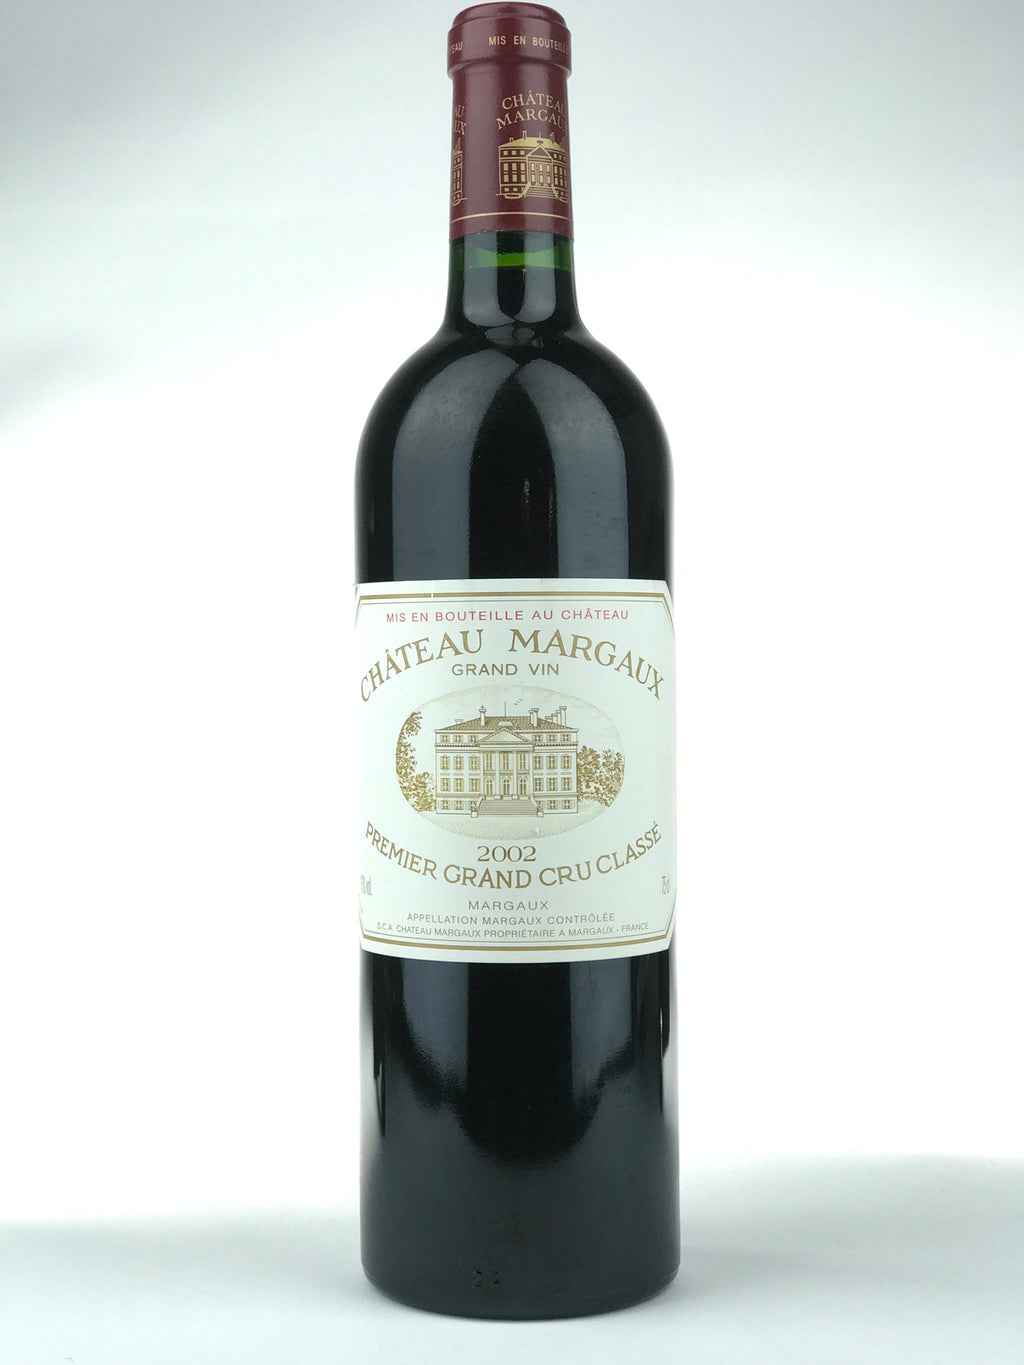 【売り安い】CHATEAU MARGAUX シャトー・マルゴー 2002 赤 ワイン 750ml 12.5% 11002684 フランス